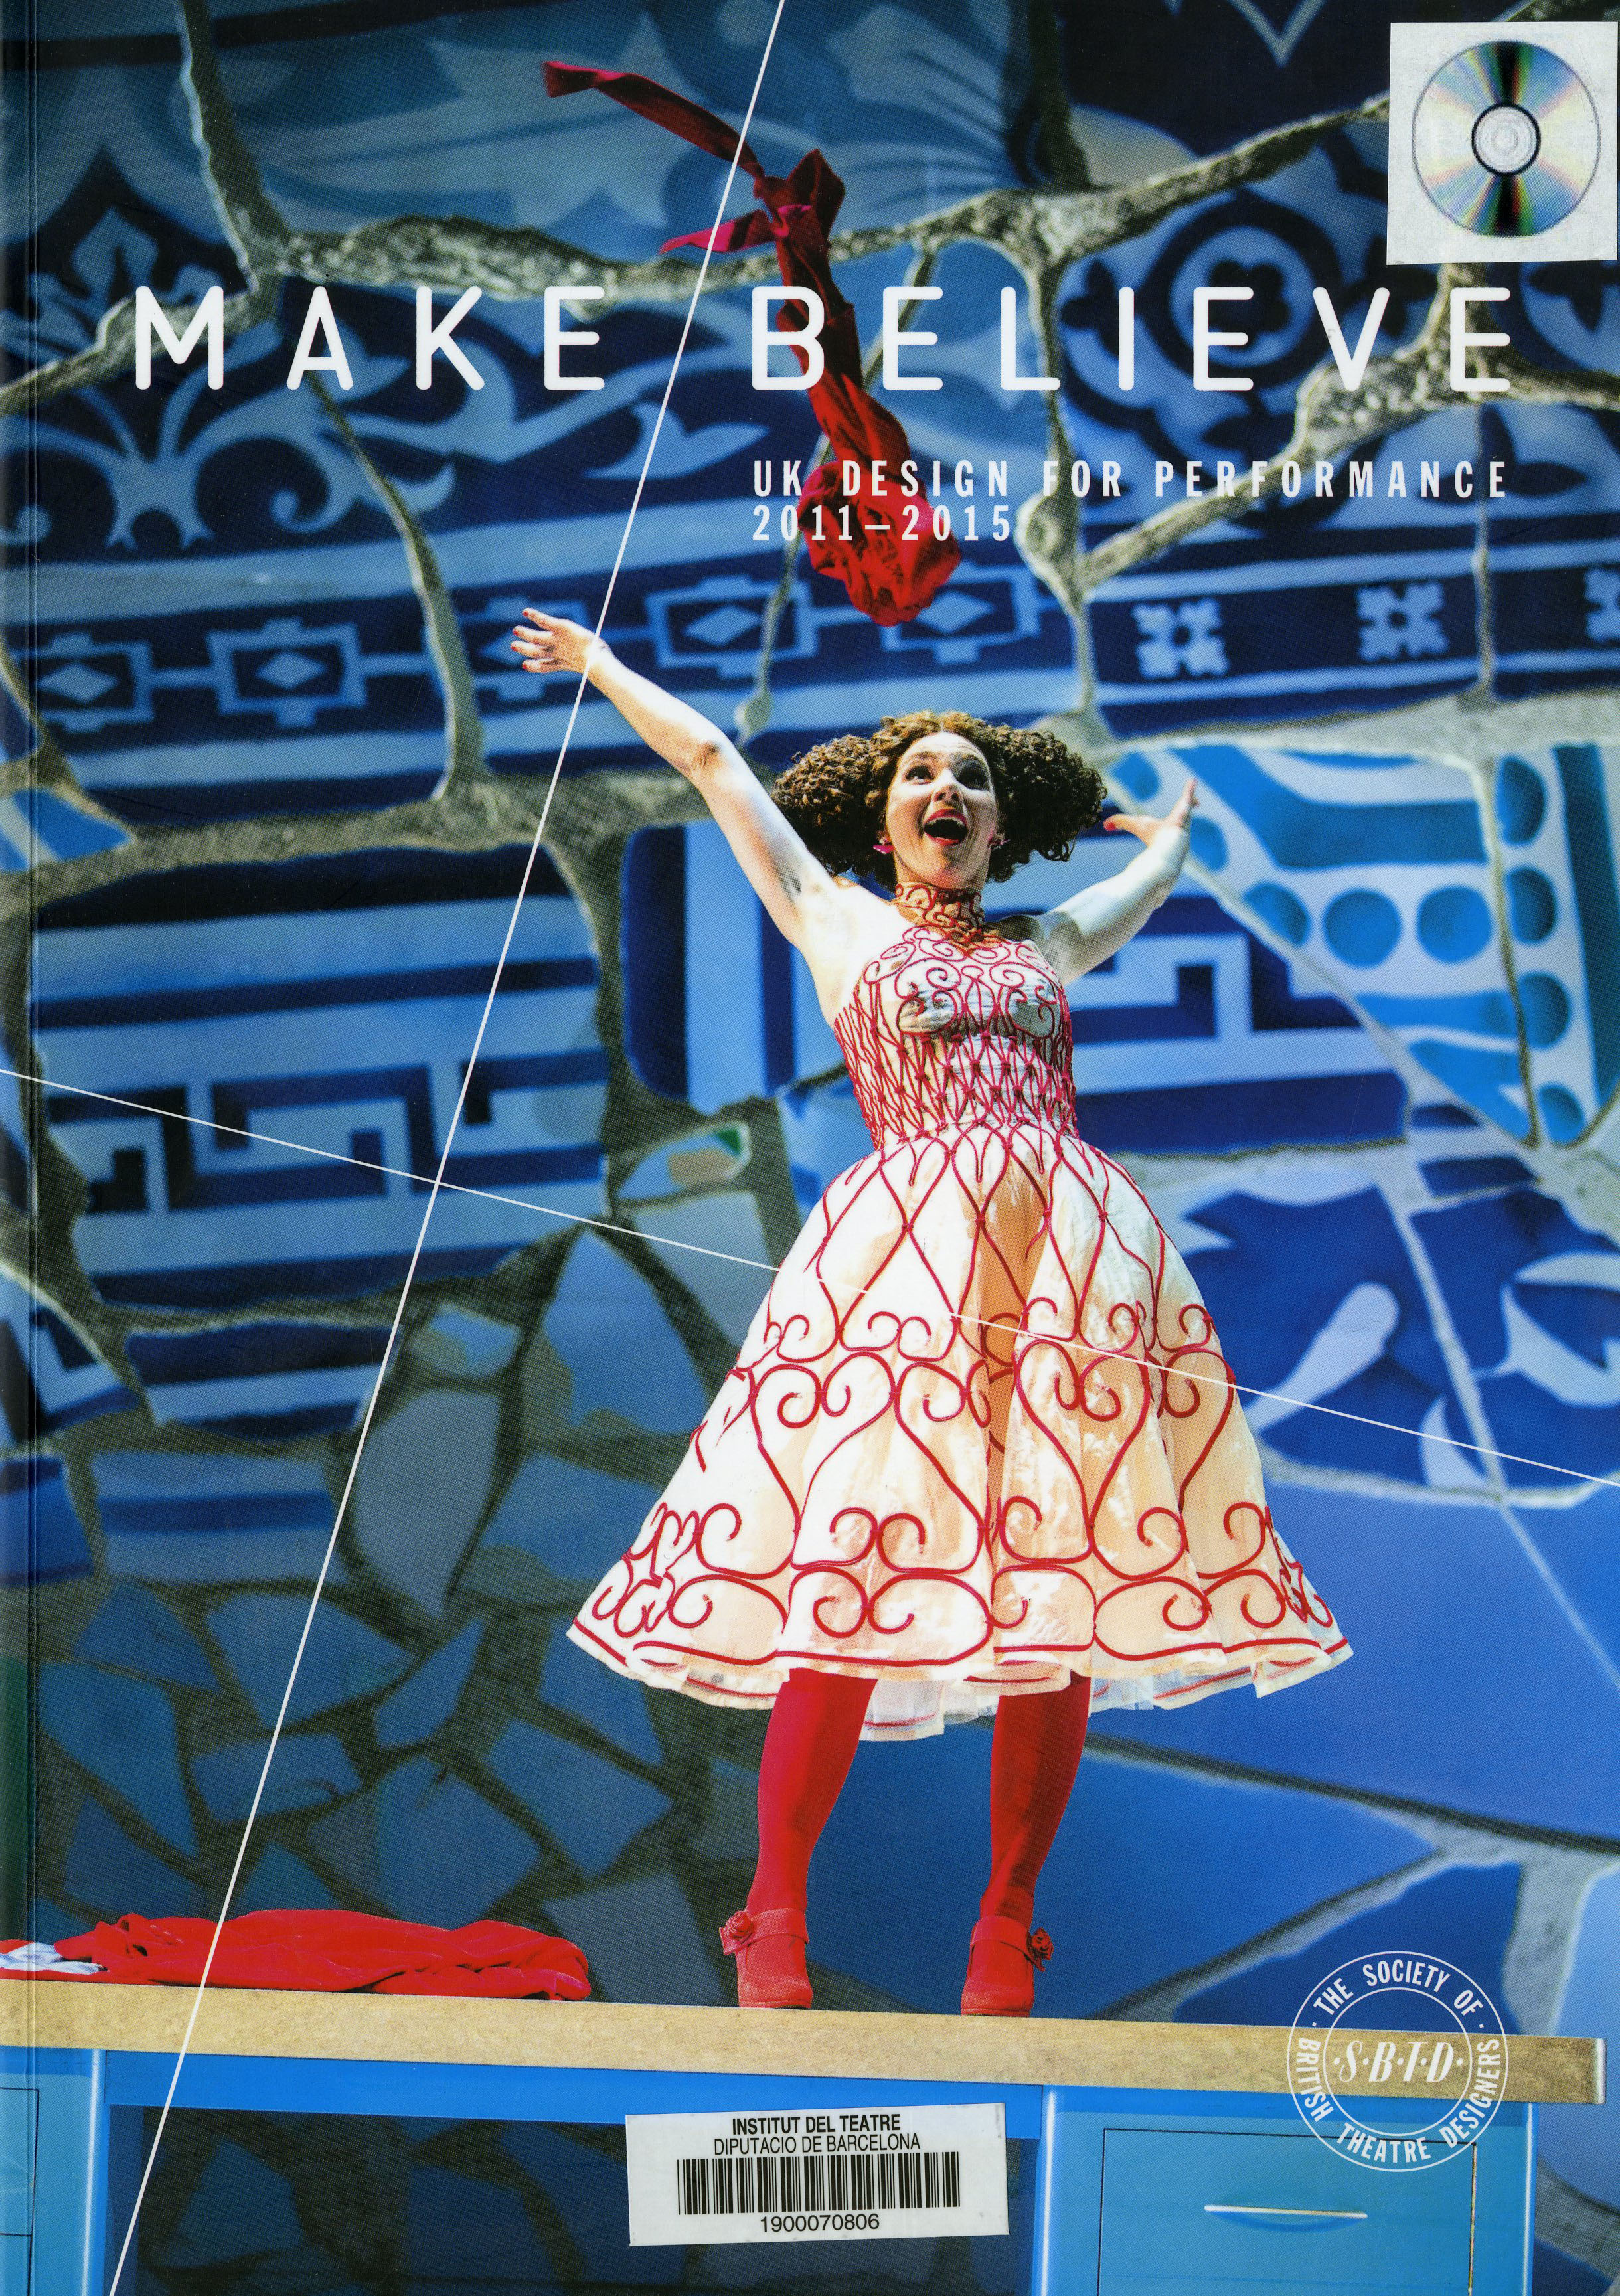 Catàleg d'exposició Make/Believe : UK design for performance 2011-2015, publicat per la Society of British Theatre Designers (SBTD) el 2014